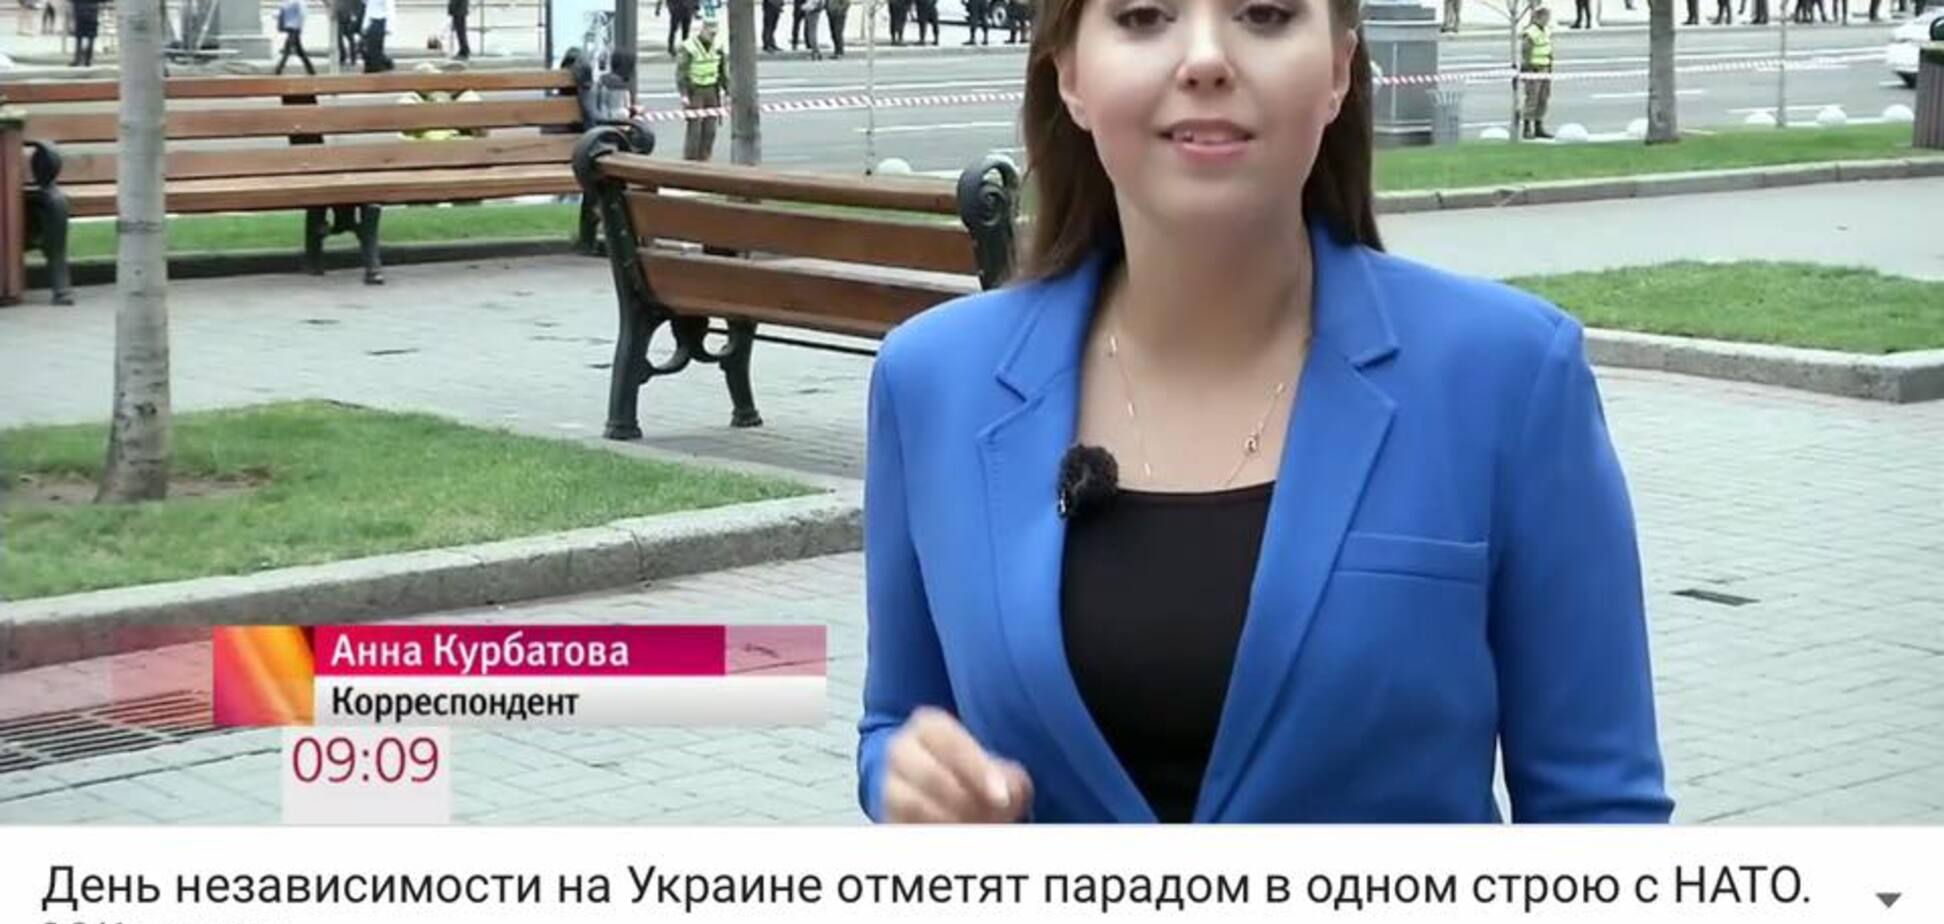 'СБУ, работайте!' ПутинСМИ сняли пропагандистский сюжет в центре Киева